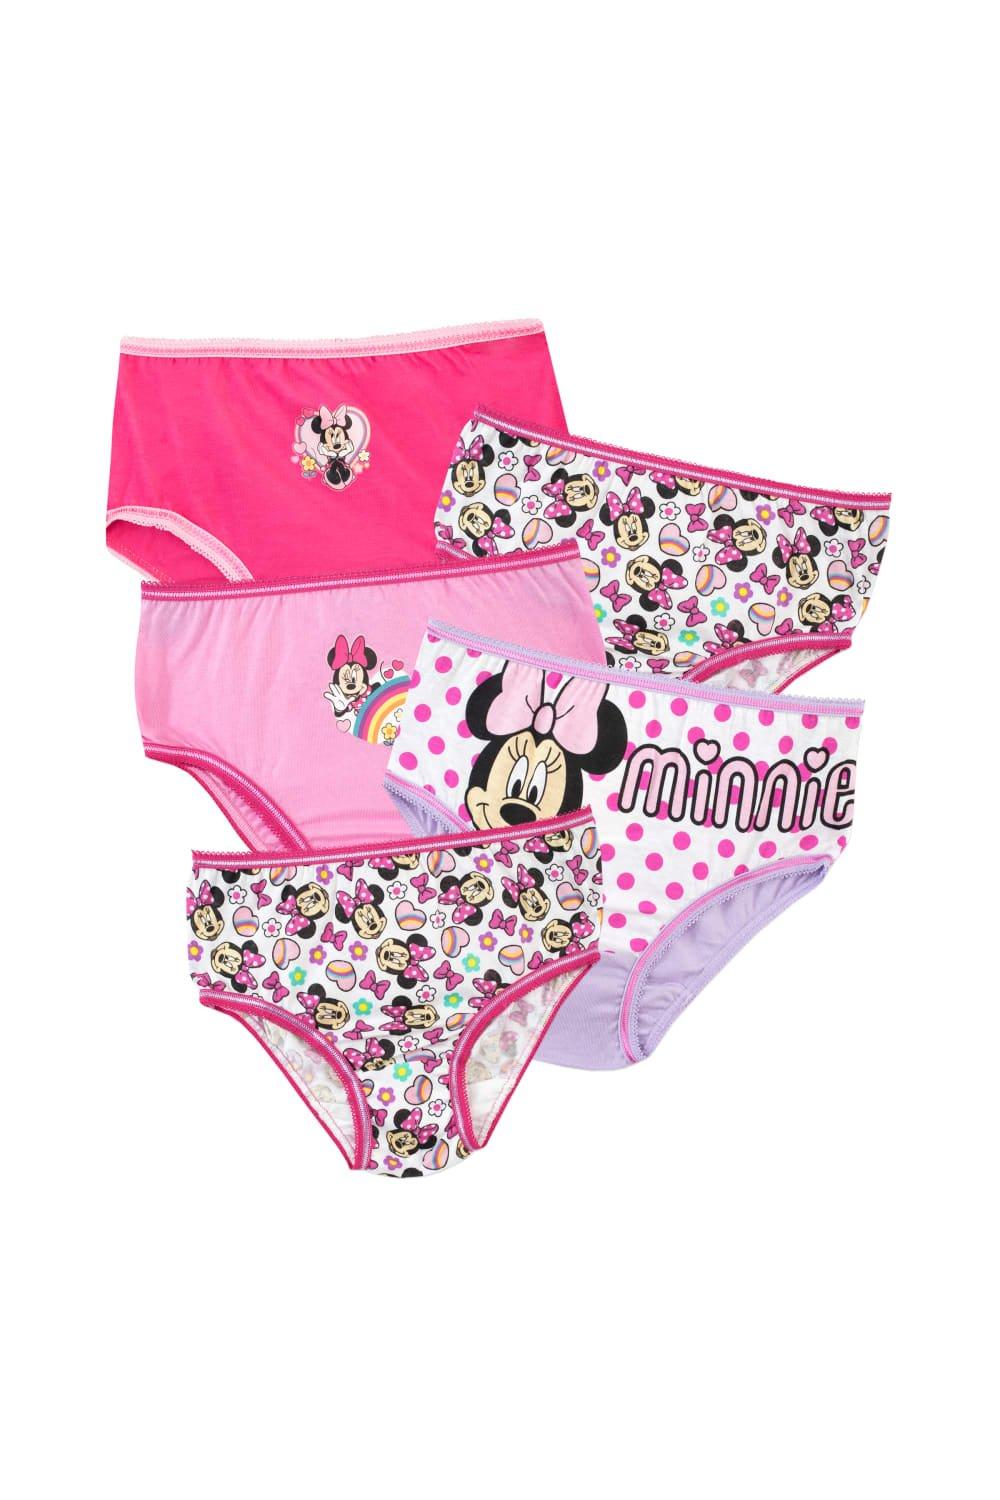 Minnie Mouse Underwear 5 Pack